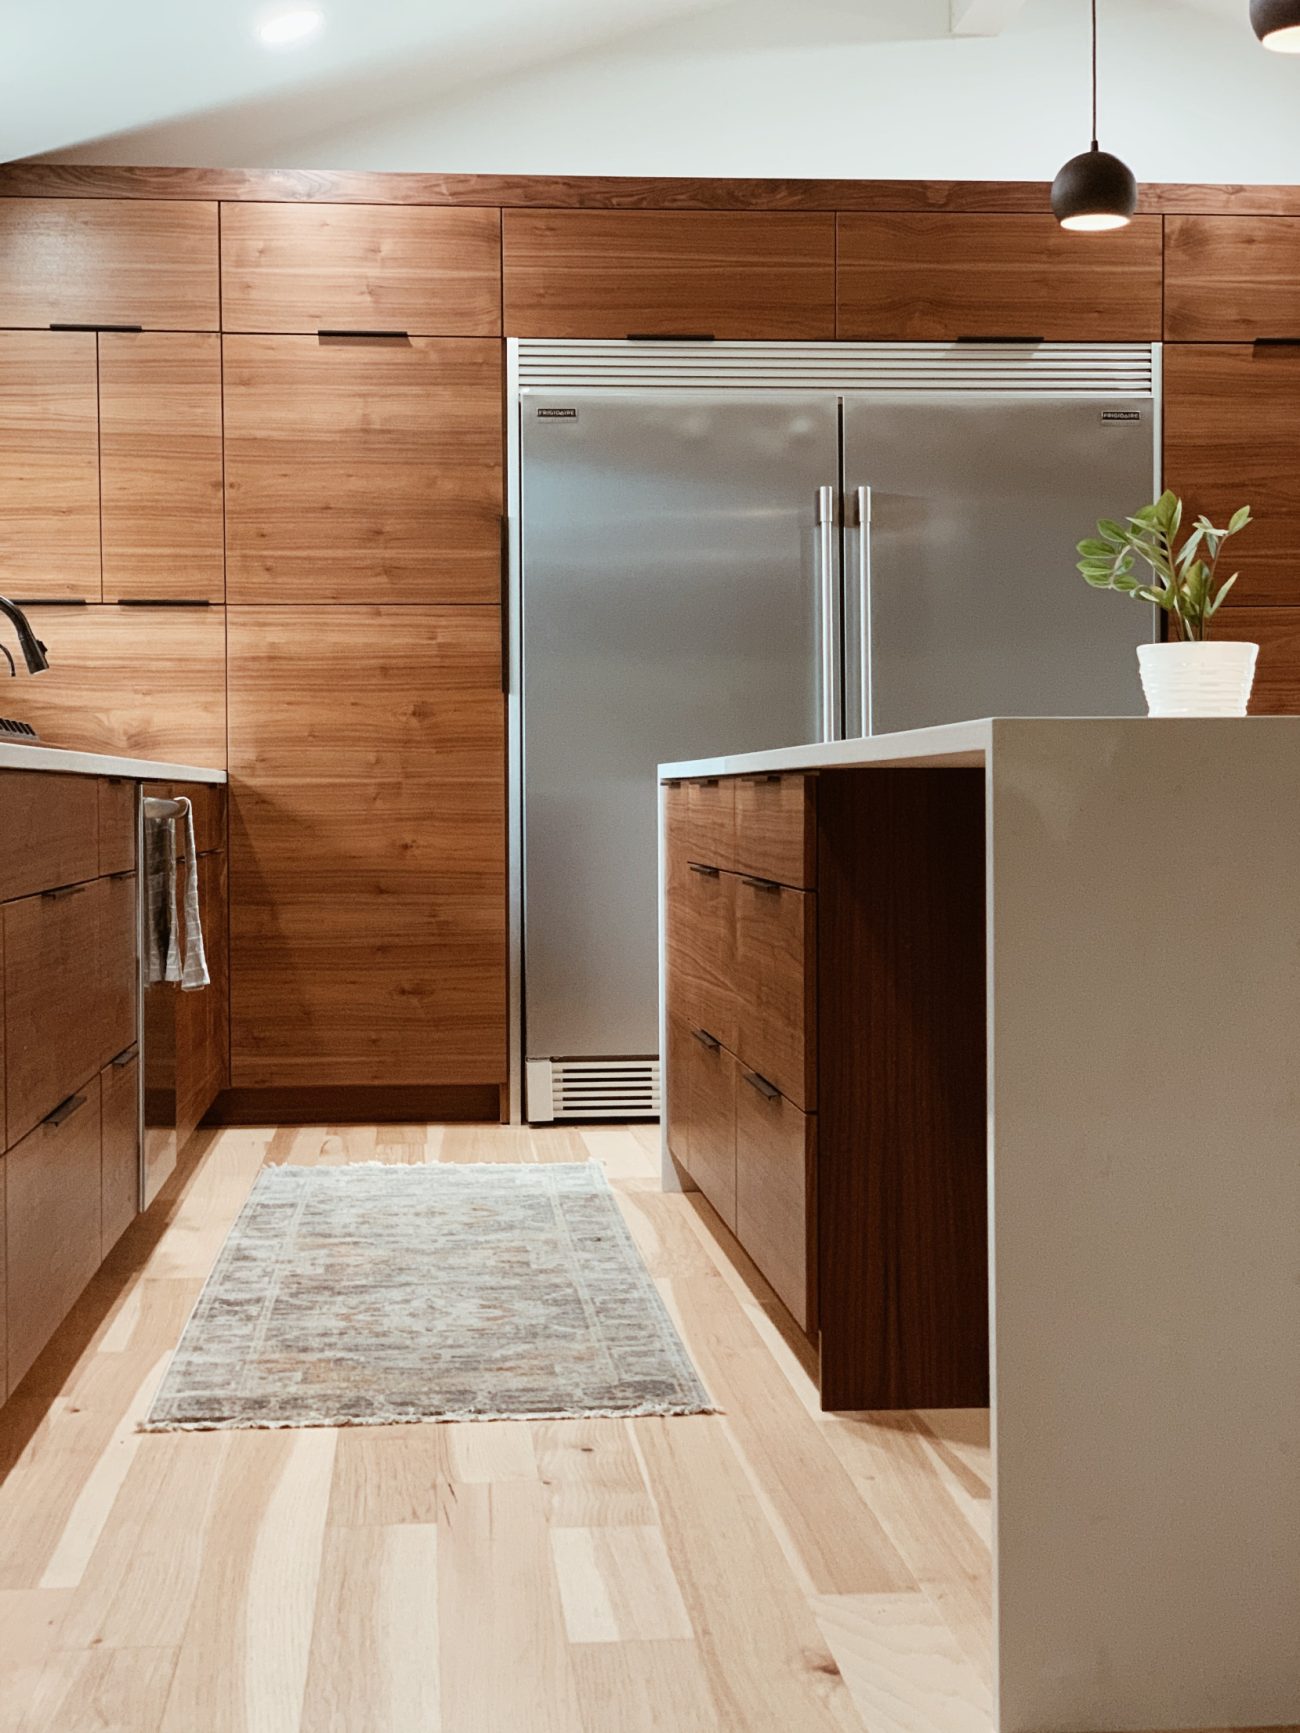 Réfrigérateur extra large dans une cuisine avec meubles en bois